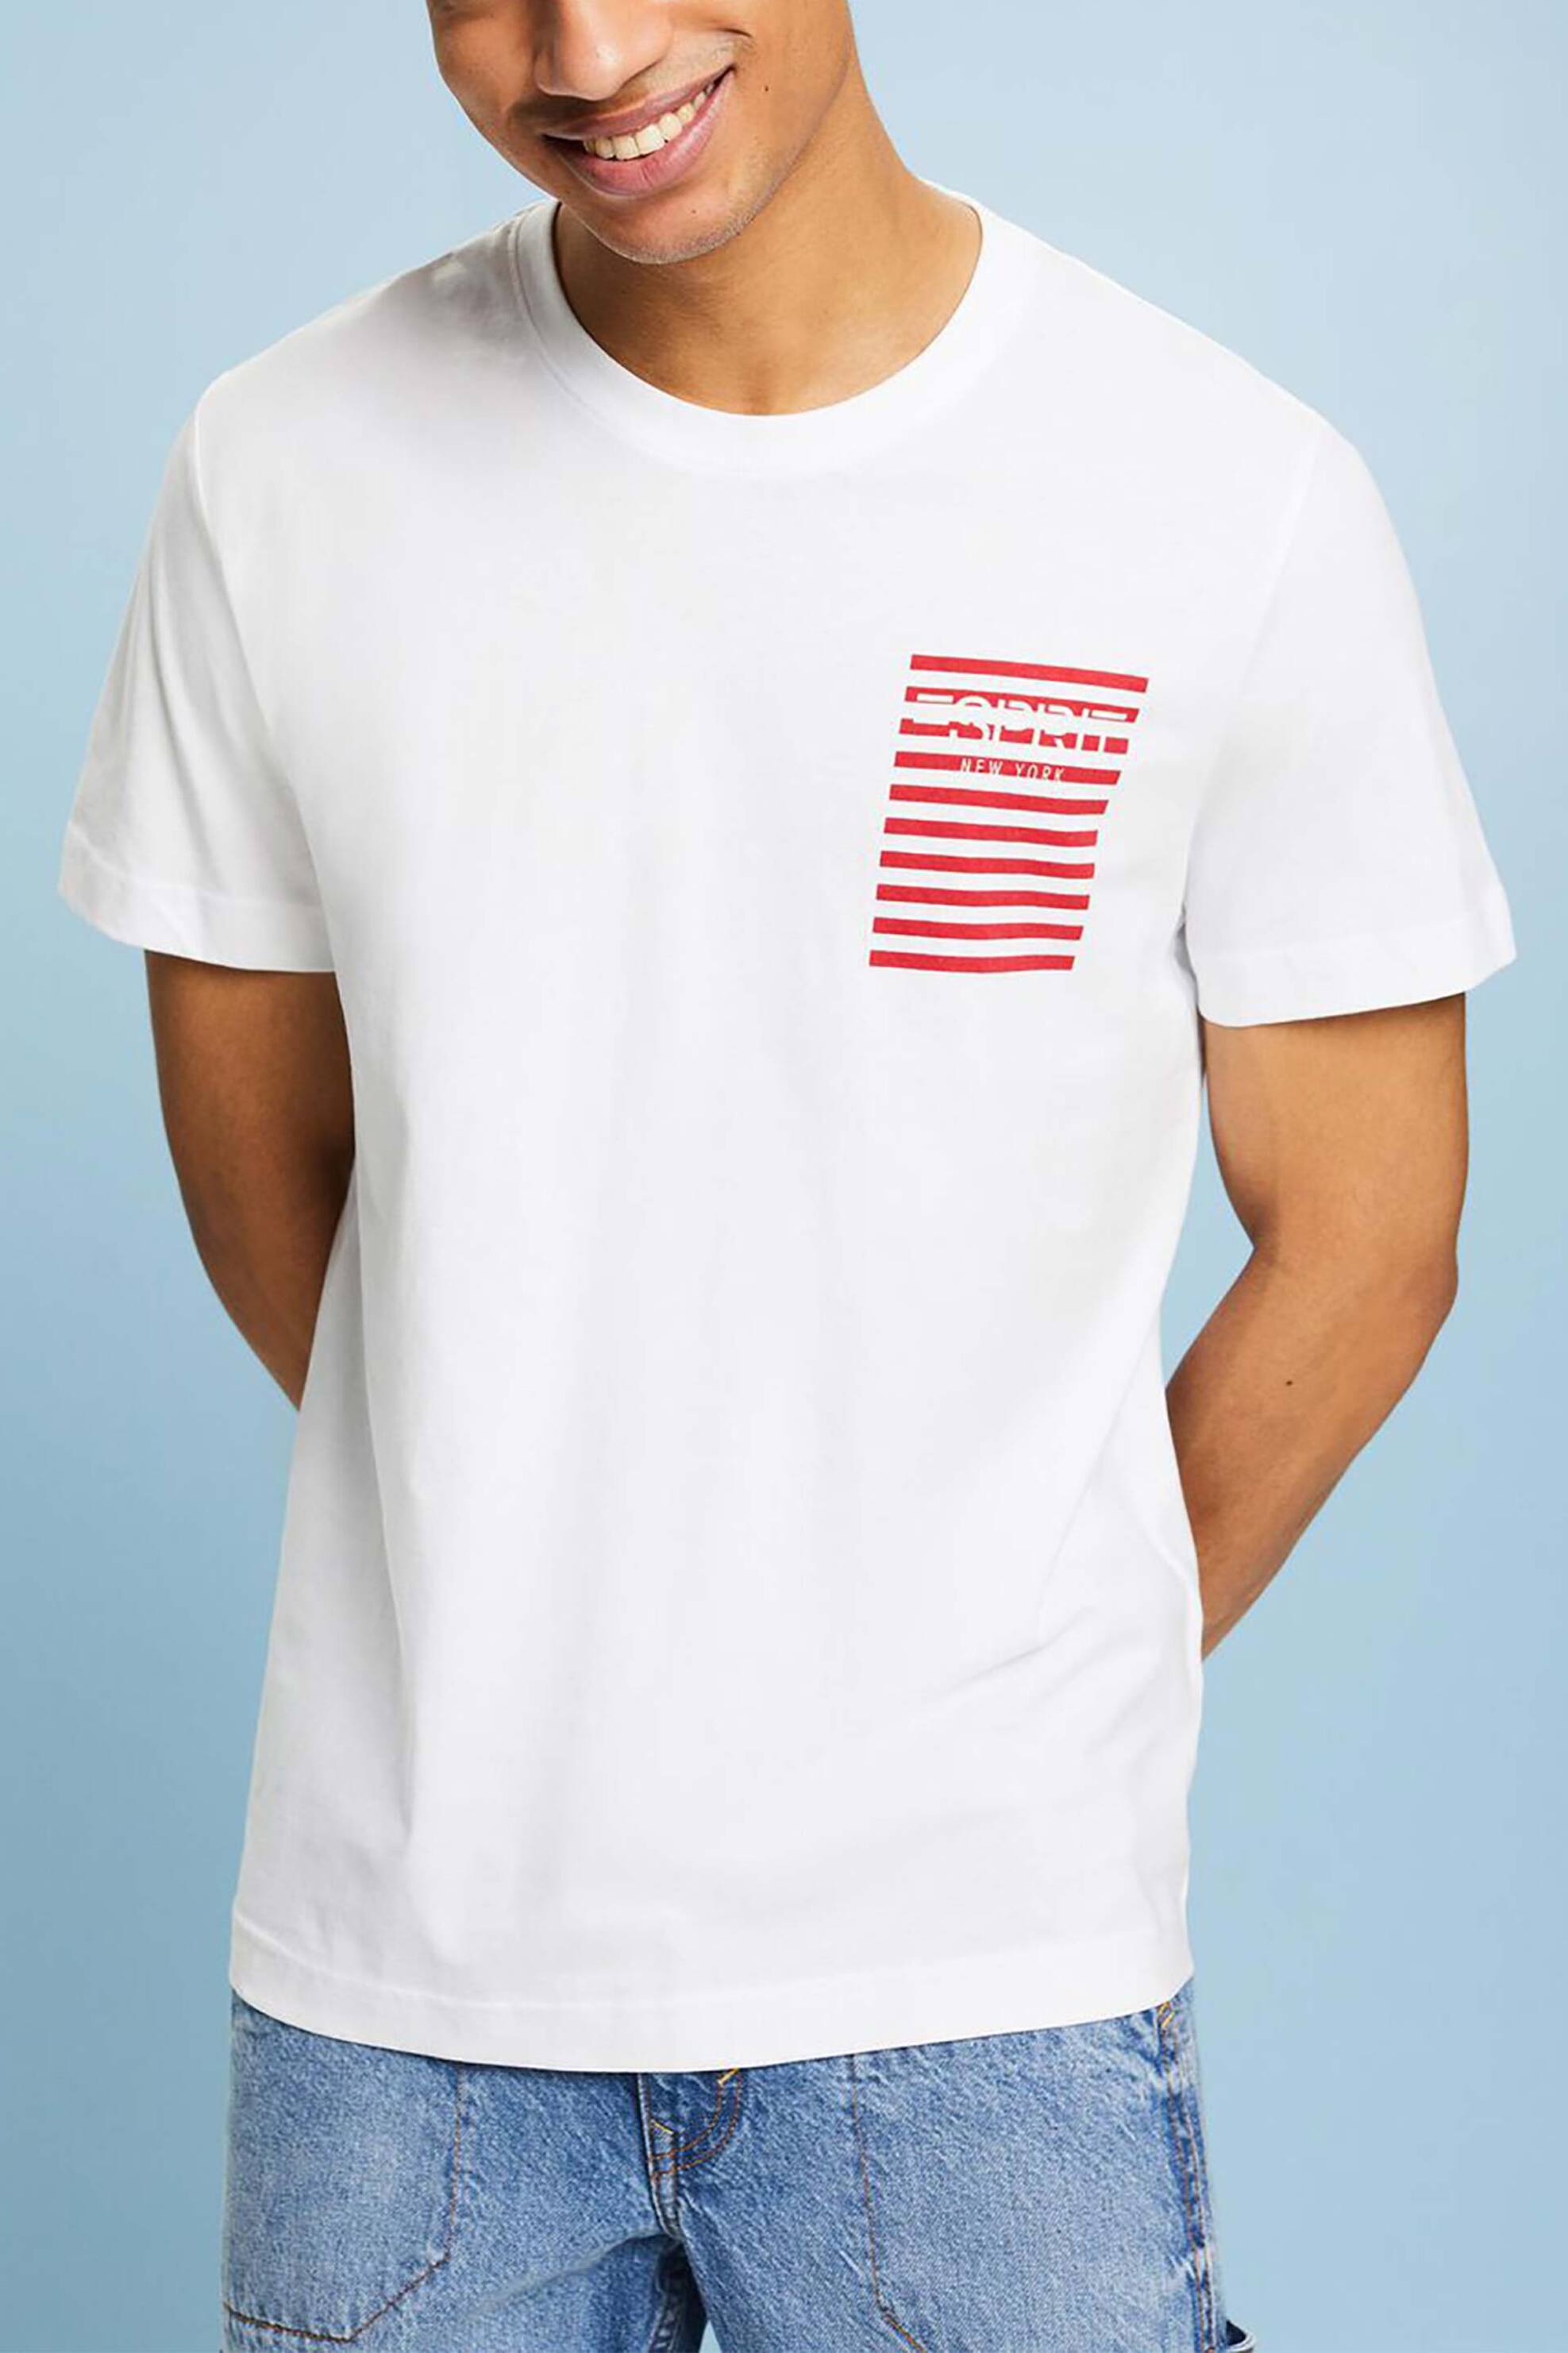 Ανδρική Μόδα > Ανδρικά Ρούχα > Ανδρικές Μπλούζες > Ανδρικά T-Shirts Esprit ανδρικό T-shirt με contrast logo Regular Fit - 014EE2K316 Λευκό